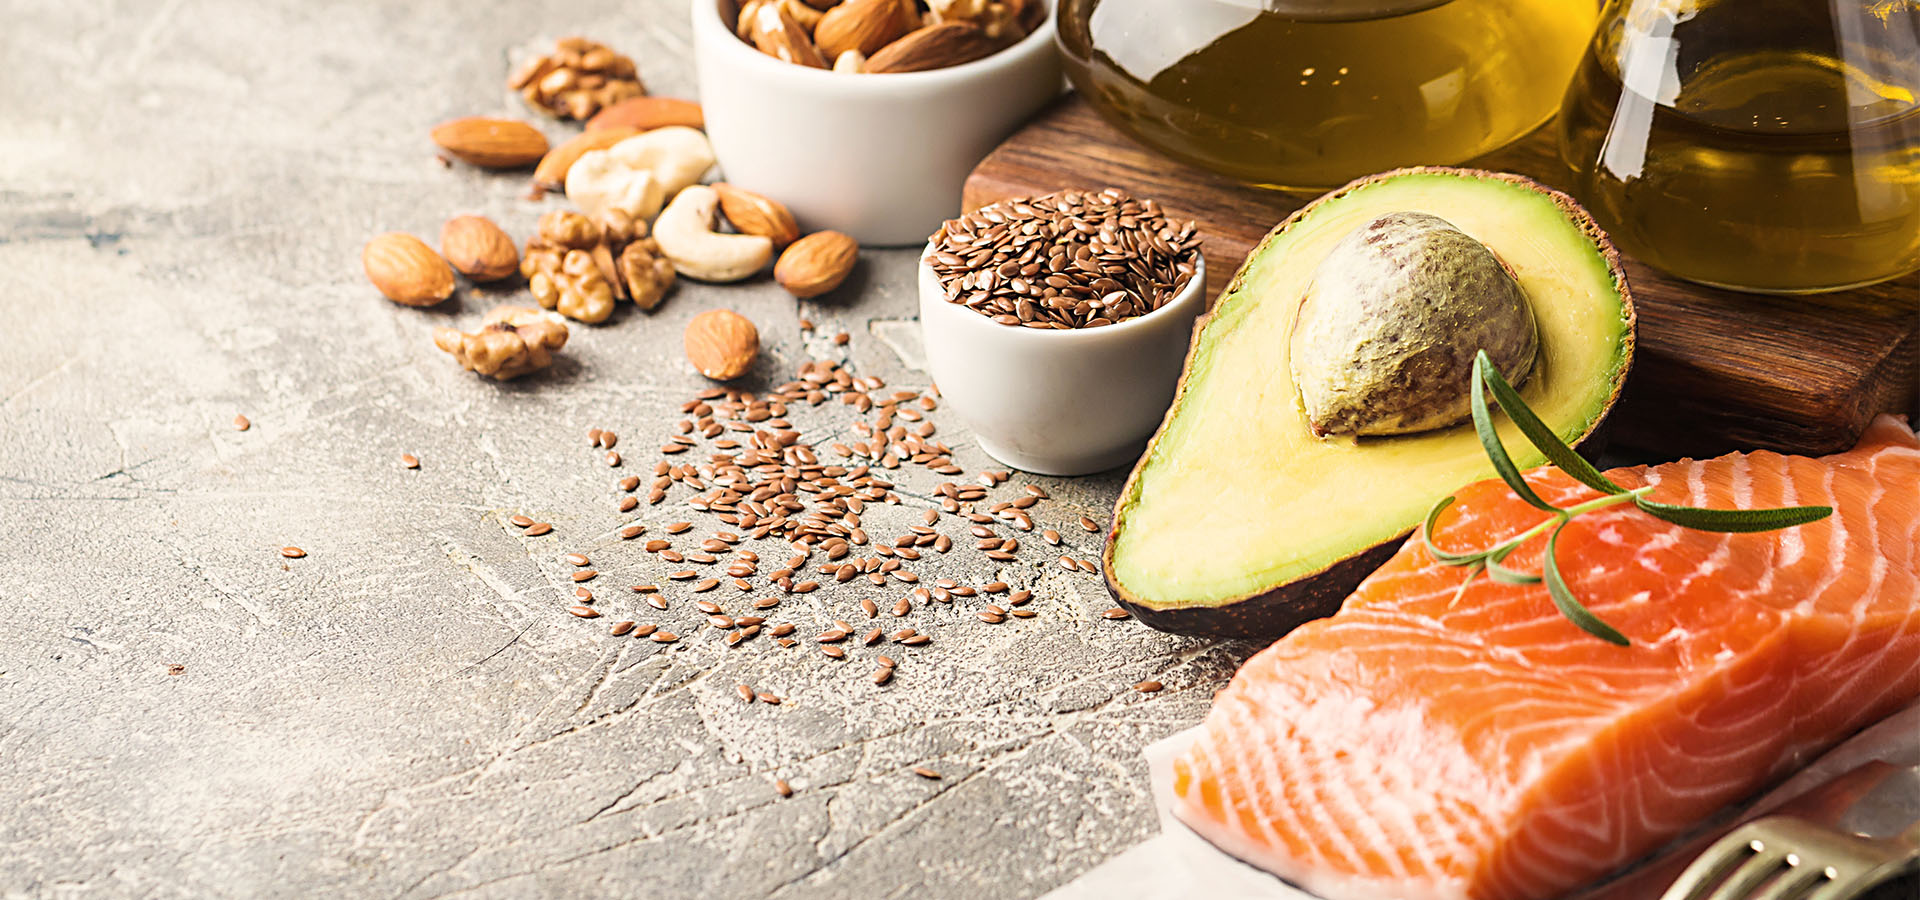 Bild zeigt verschiedene Lebensmittel, die reich an Omega-3-Fettsäuren sind, im Kontext der Gesundheit.